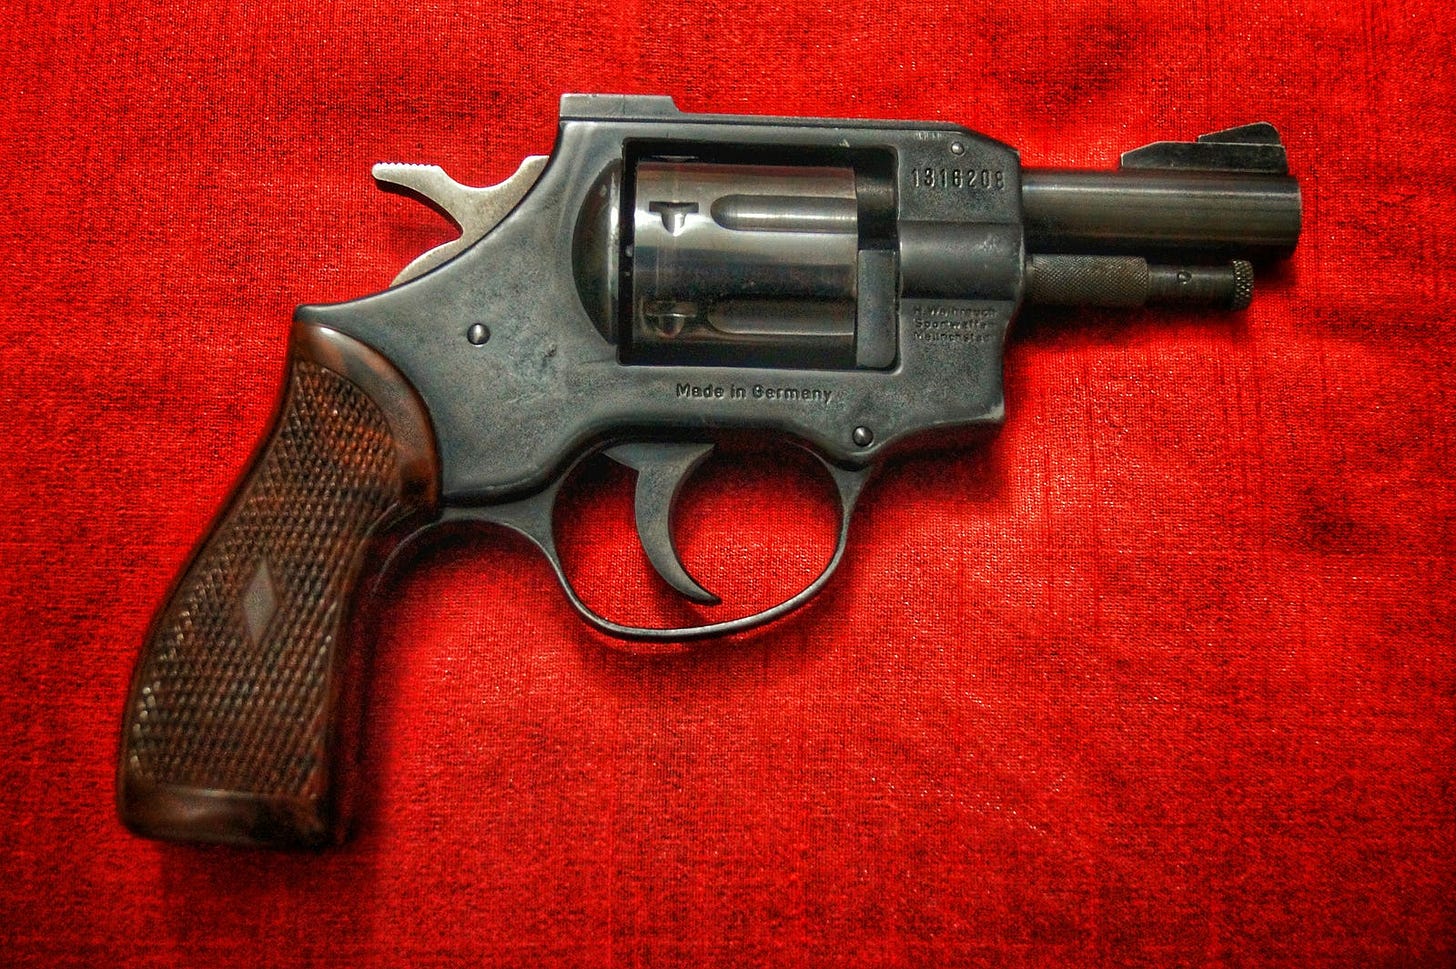 Picture of a short barrel .38 revolver, black frame, brown grip.